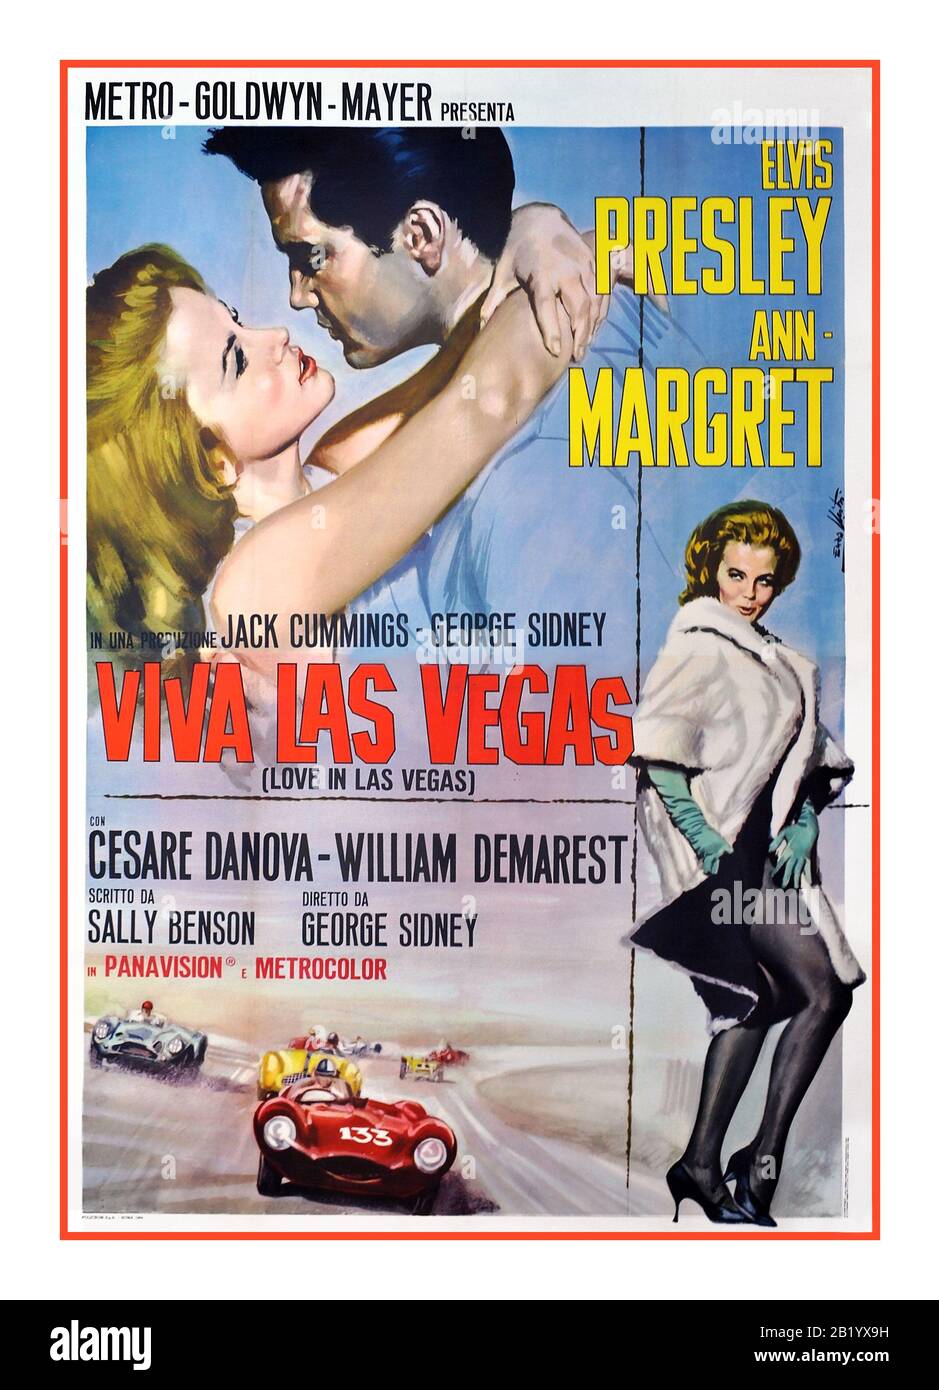 VIVA LAS VEGAS Film poster for Elvis Presley starring in 'Viva Las Vegas' with co star Ann Margret May 20, 1964 (USA) Stock Photo